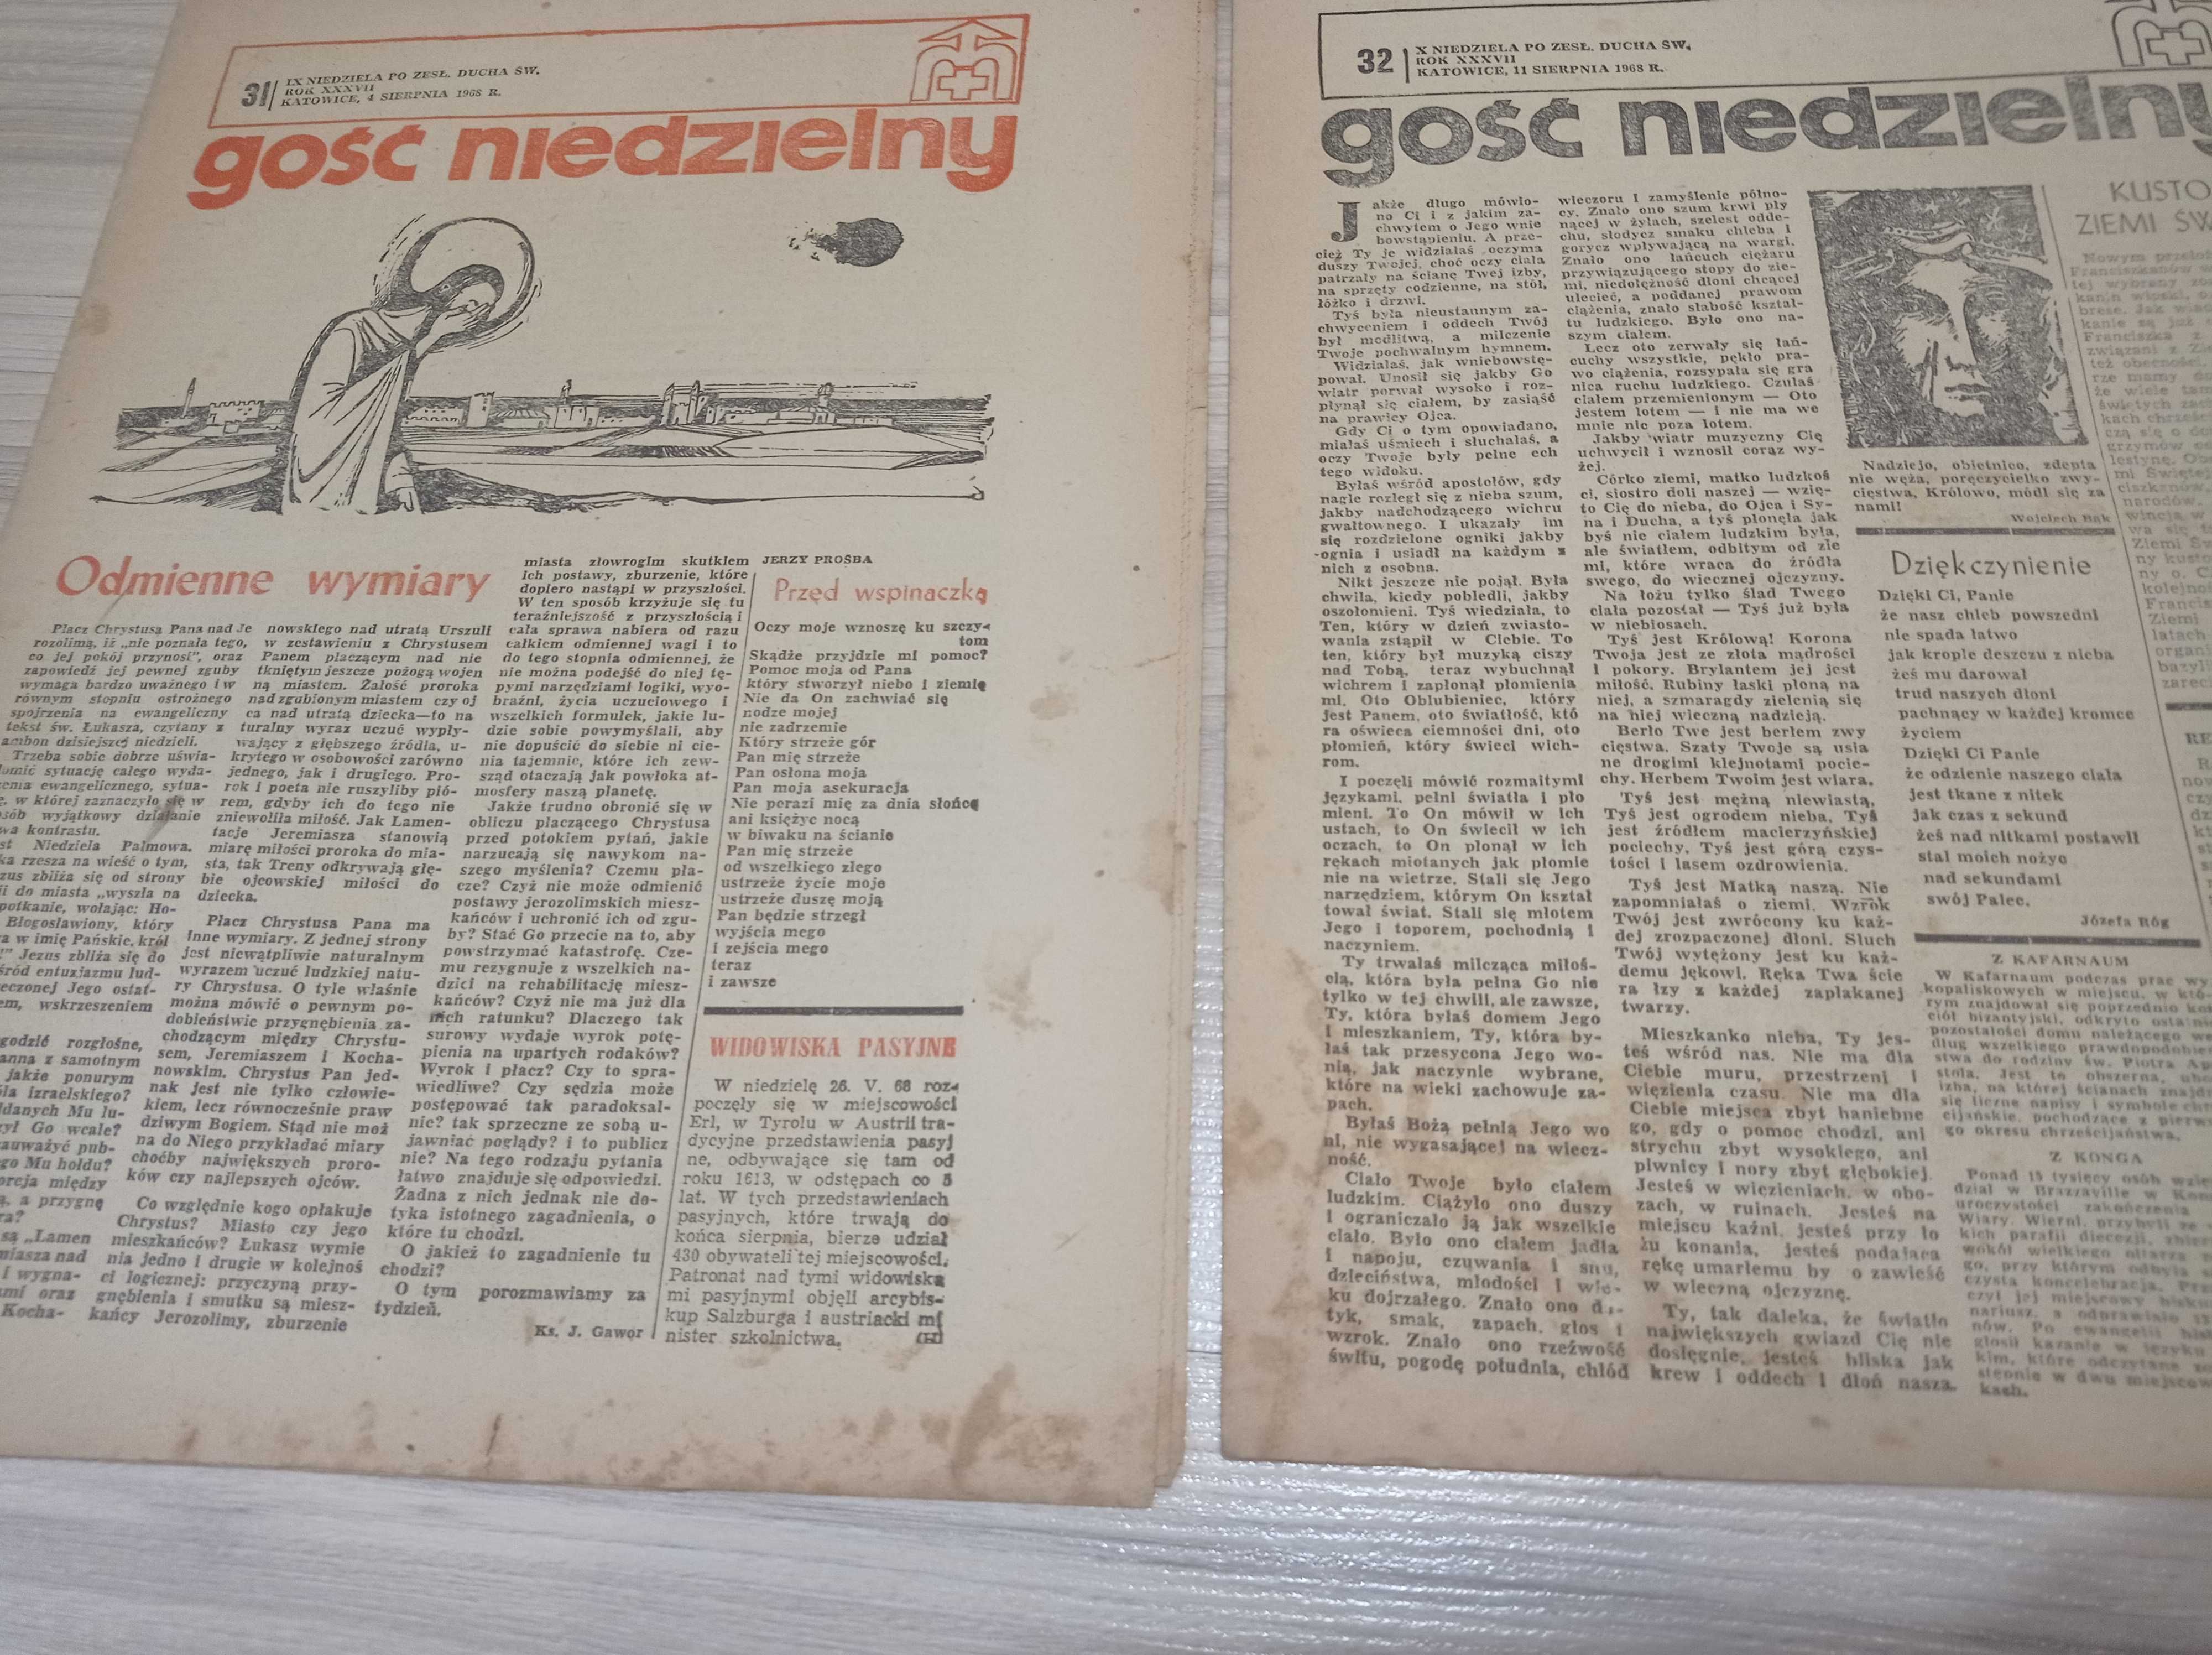 Gość niedzielny, tygodnik katolicki 8-12.1968